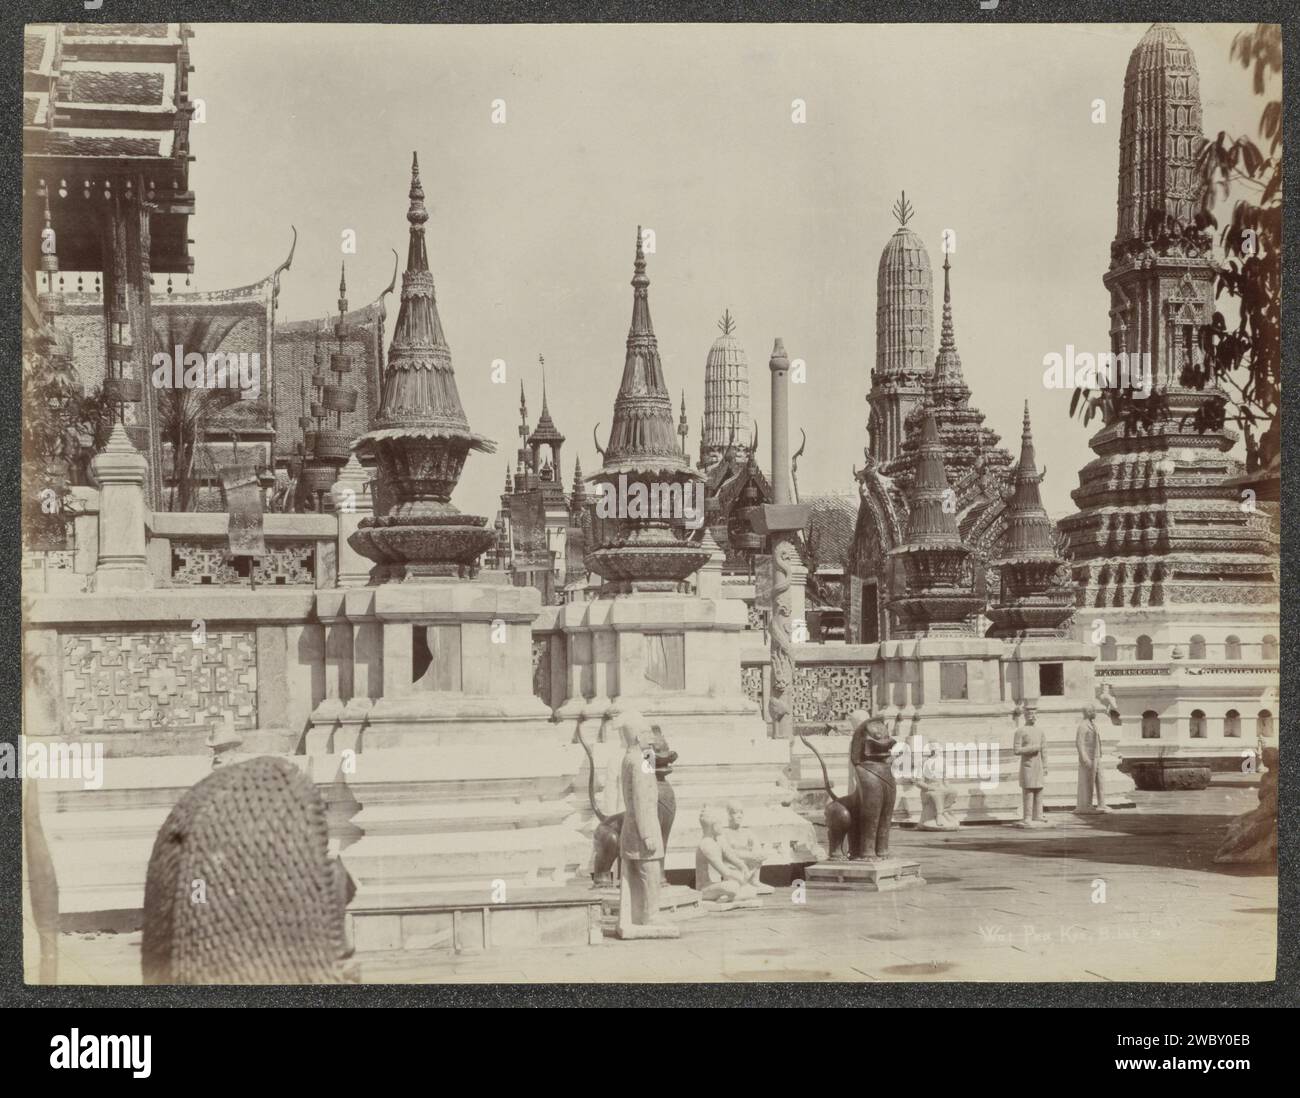 Tempelkomplex eines pra Keo (Tempel des smaragdgrünen Buddha) in Bangkok, G.R. Lambert & Co., ca. 1870 - ca. 1900 Foto Teil des Albums mit 50 Fotos einer Reise durch Südostasien. Bangkok Papier. Fotografische Unterstützung Albumendruck Tempel, Schrein  Hinduismus, Buddhismus, Jainismus Bangkok Stockfoto